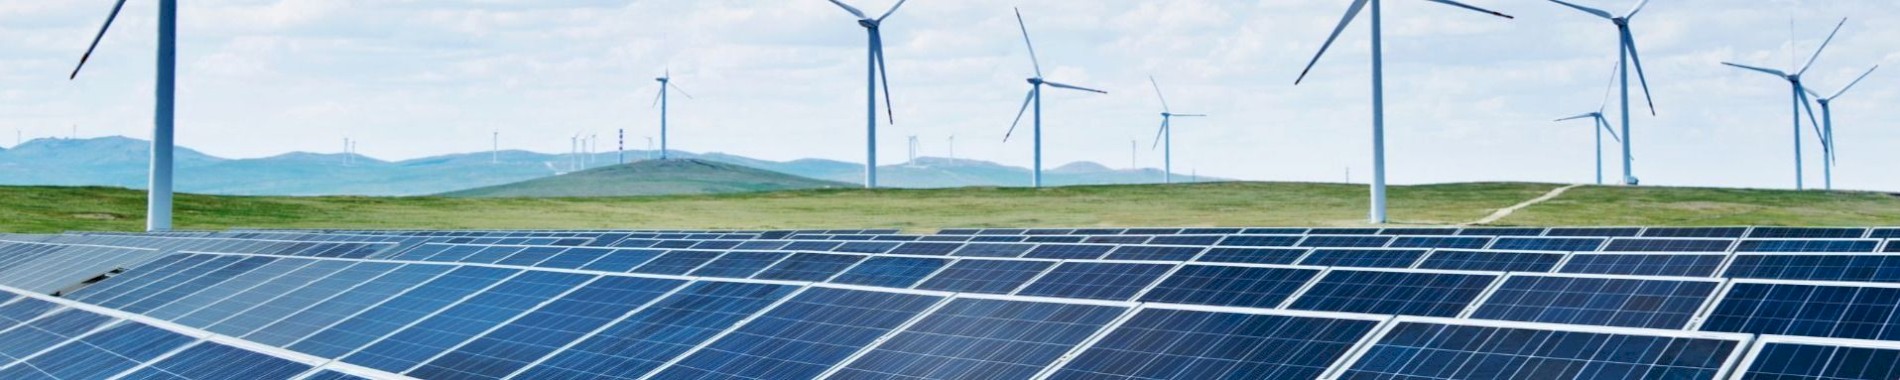 Développement local des énergies renouvelables